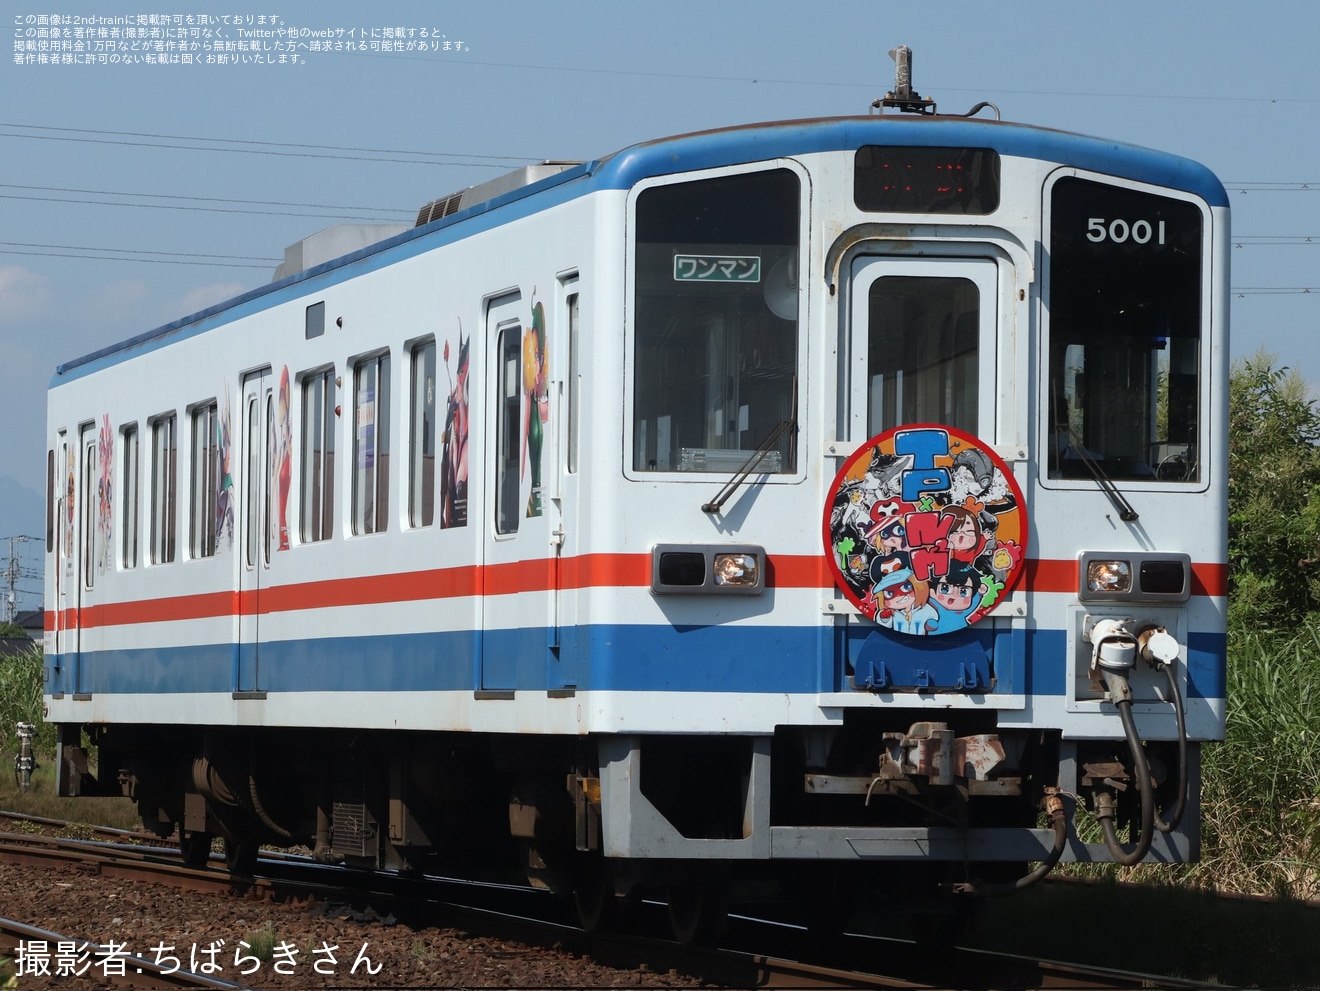 【関鉄】「なつめさんち号」がキハ5001号を使用して運転の拡大写真